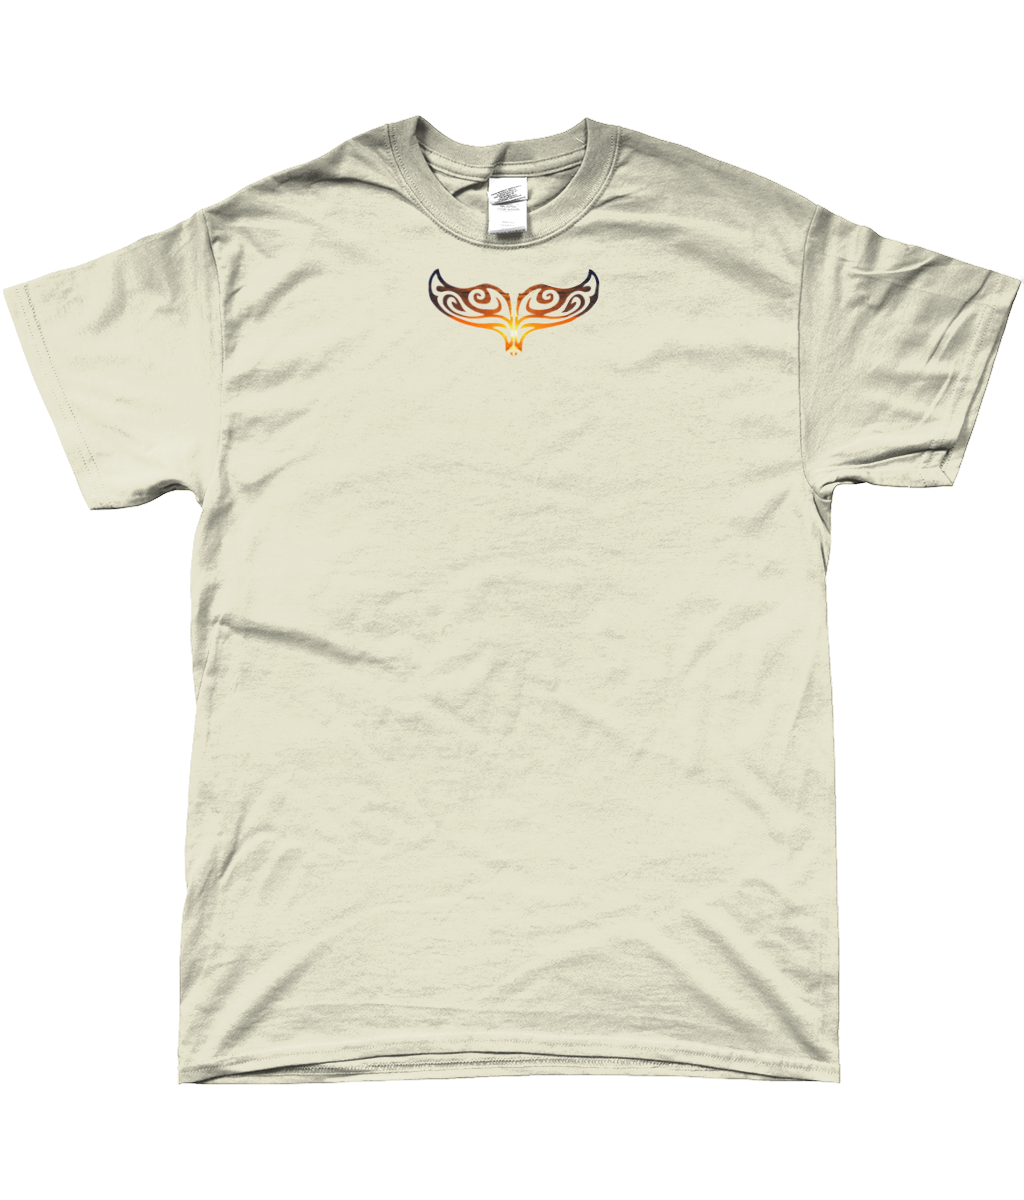 Sunset WhaleTail t-shirt